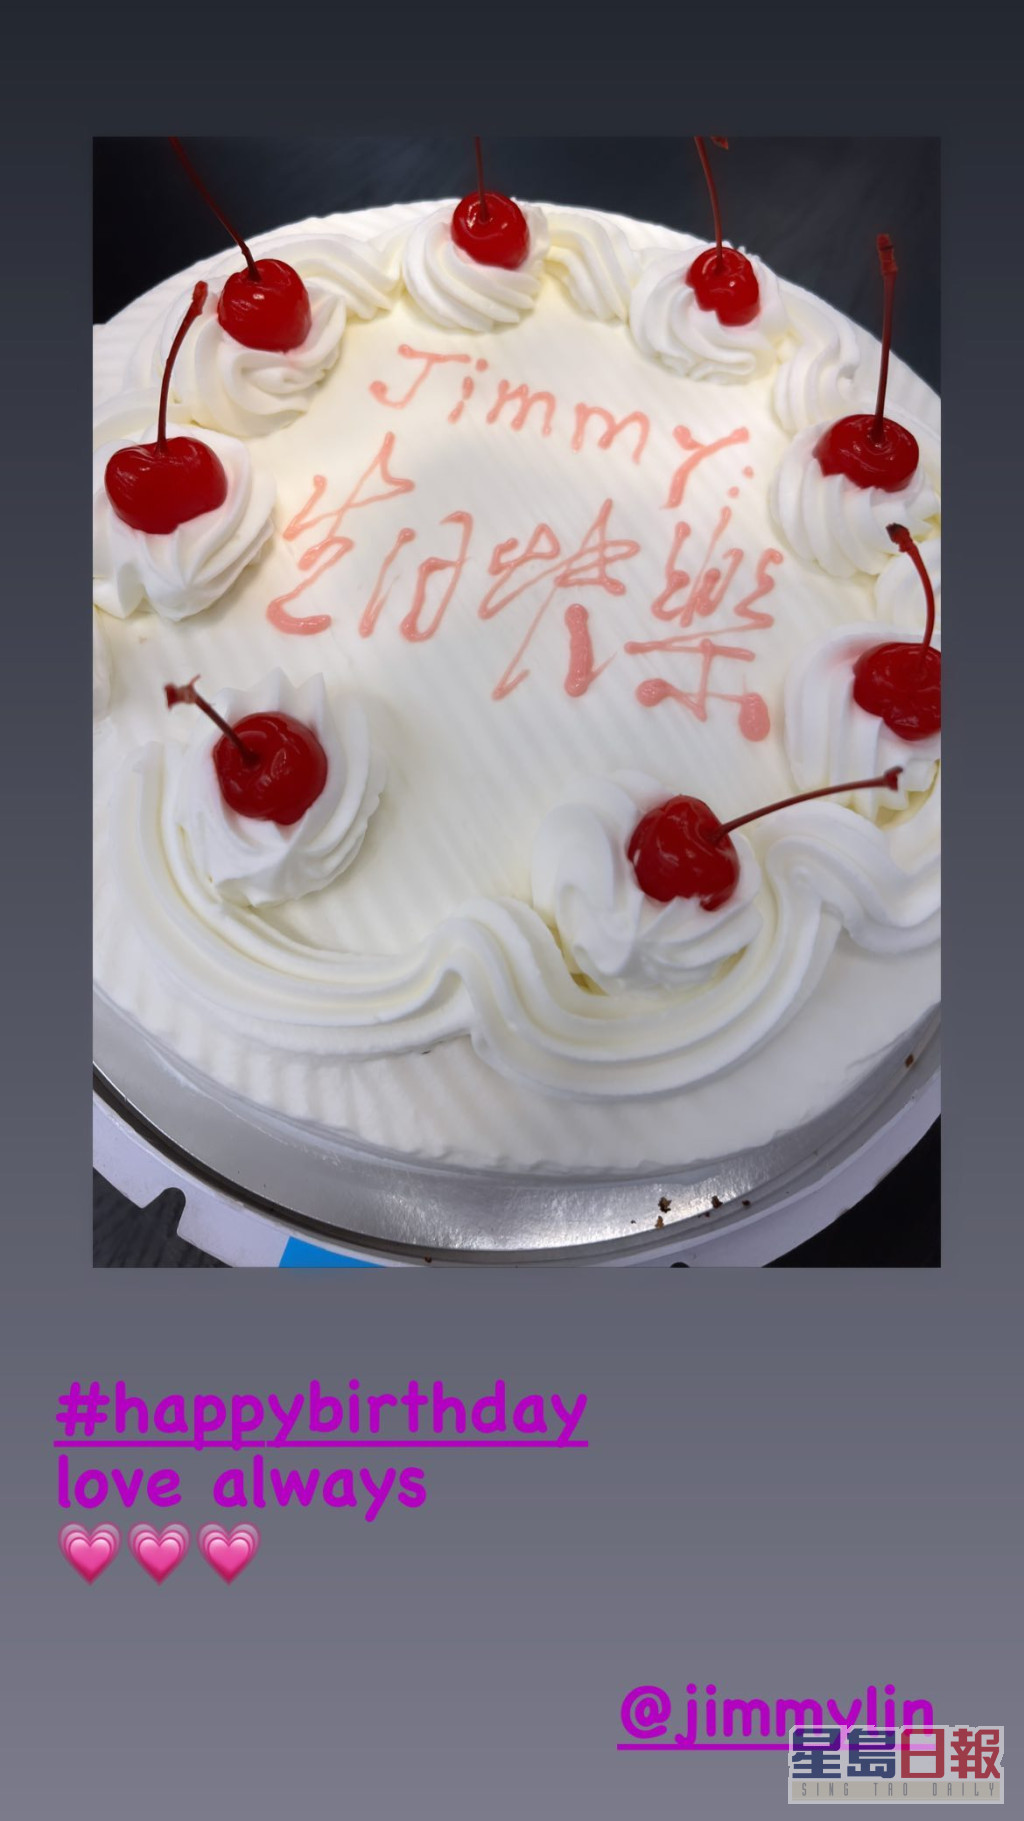 林志颖的生日蛋糕好传统。